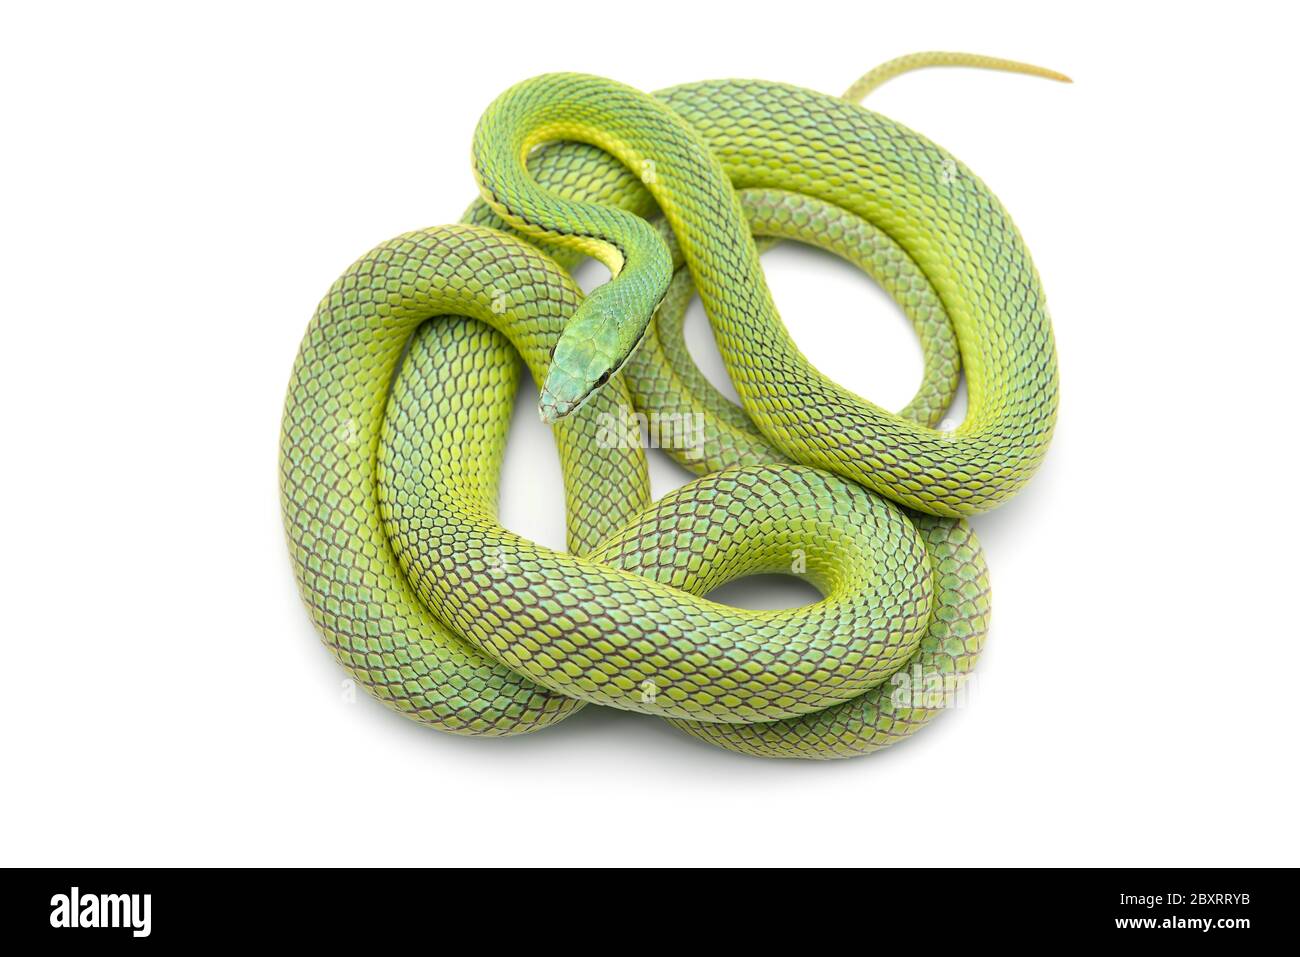 Serpent vert de Baron isolé sur fond blanc Banque D'Images